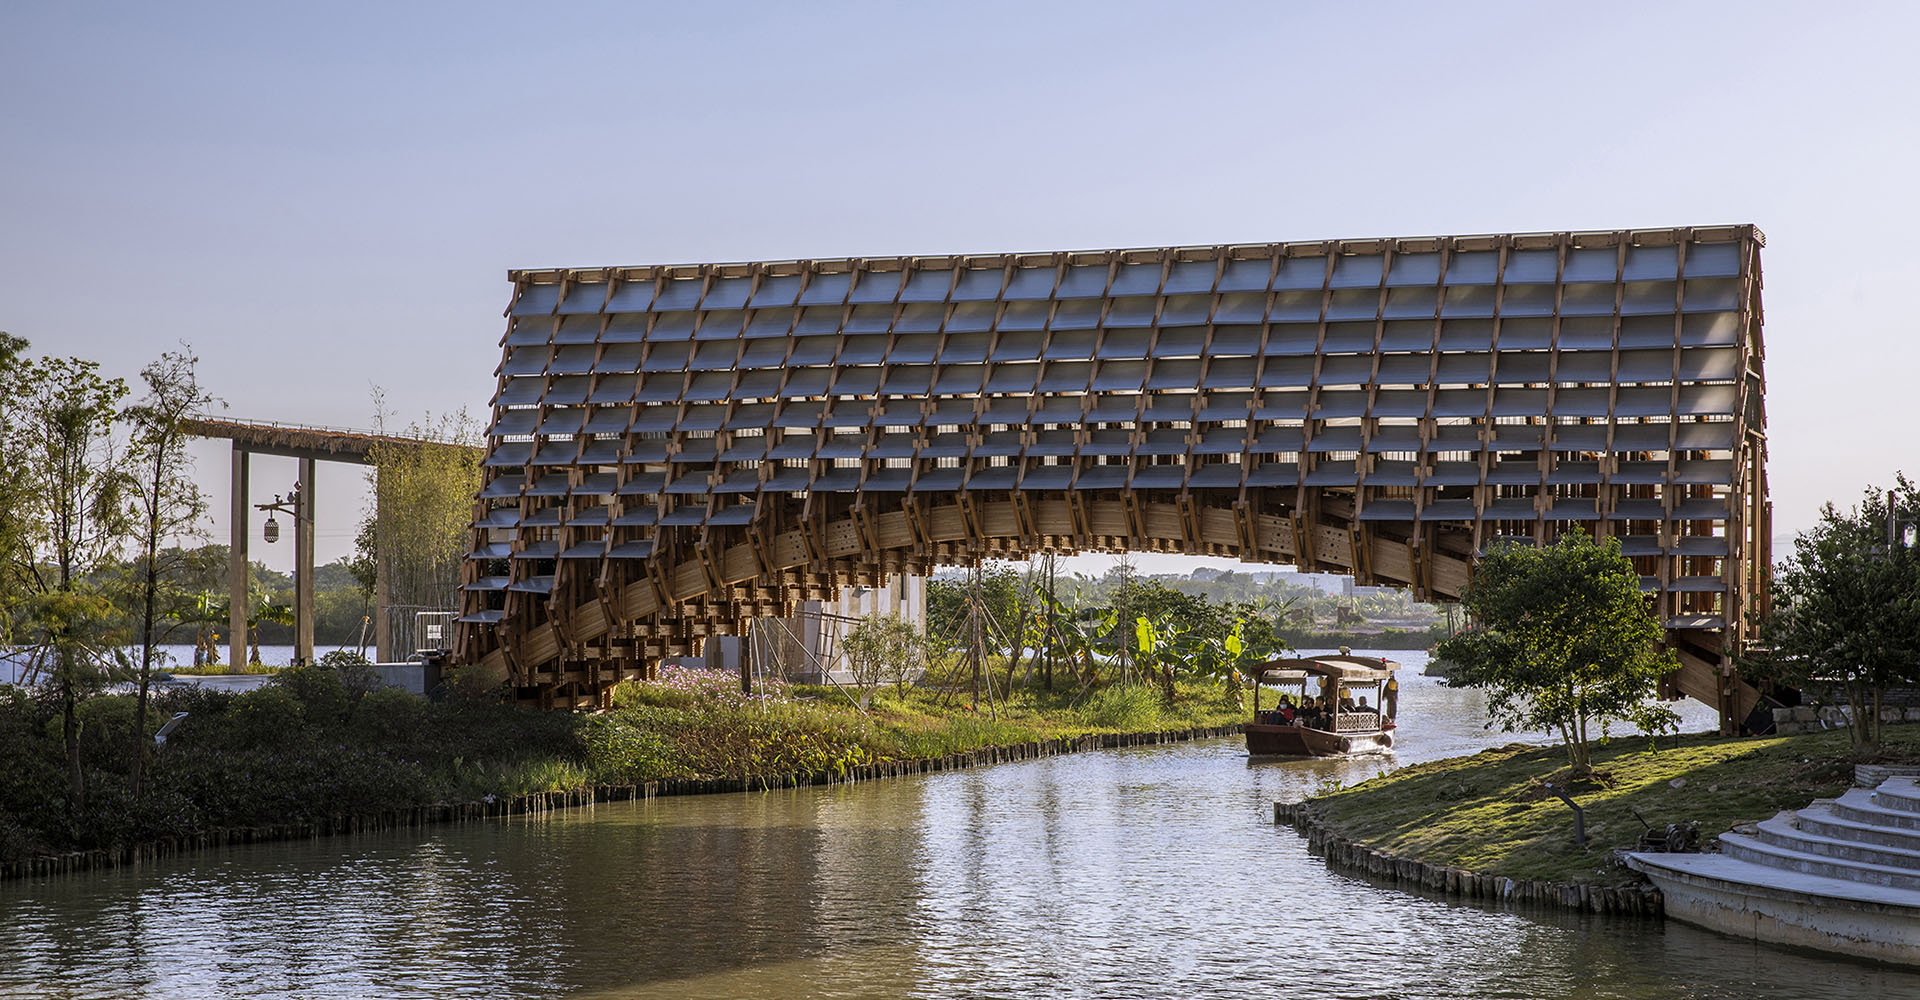 Деревянный мост от LUO studio - как в Китае с помощью архитектуры возрождают деревни на воде